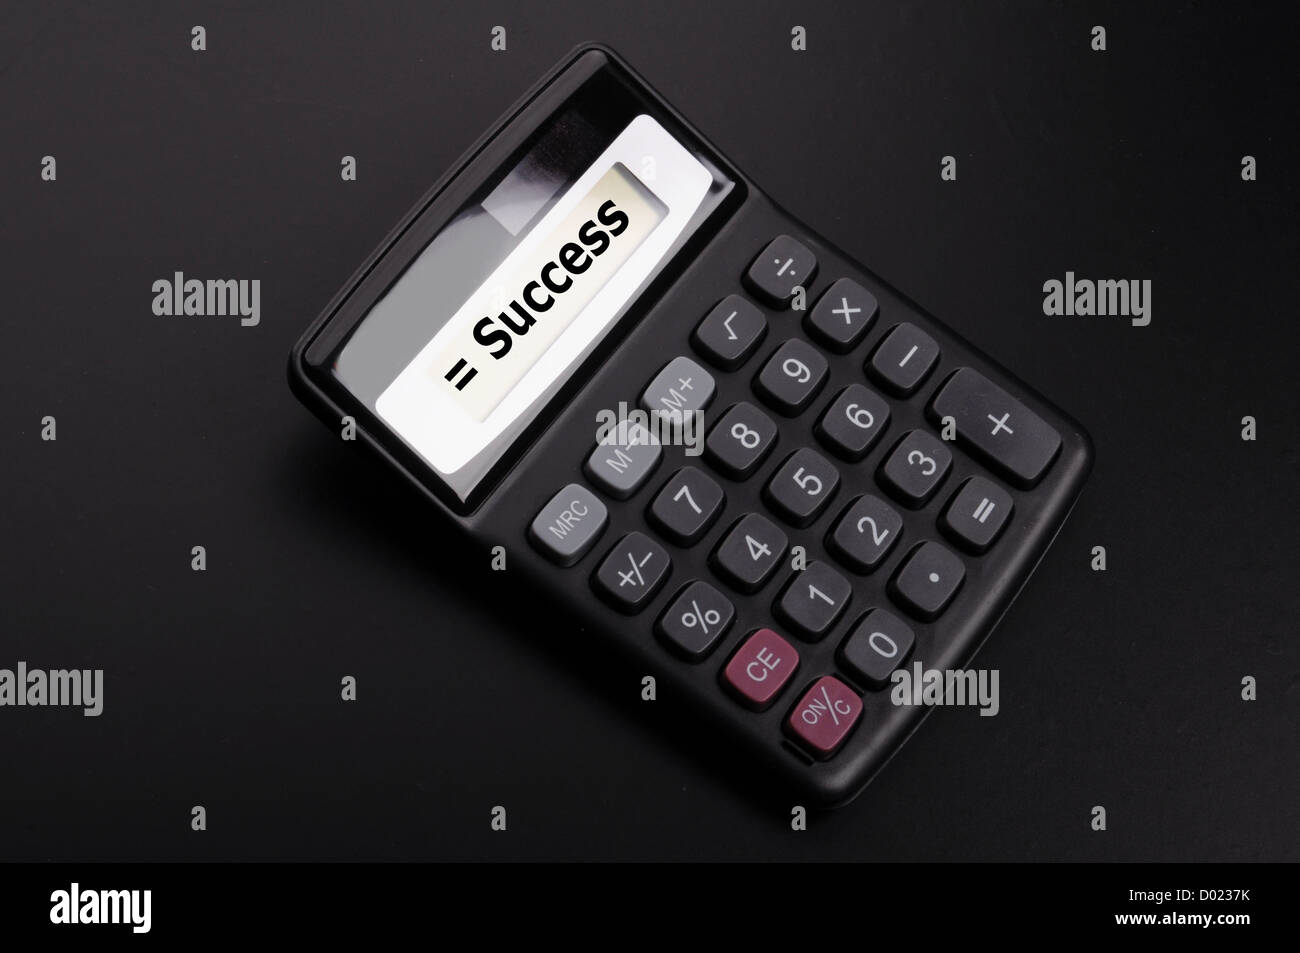 Concetto di successo con la parola sul business calculator Foto Stock